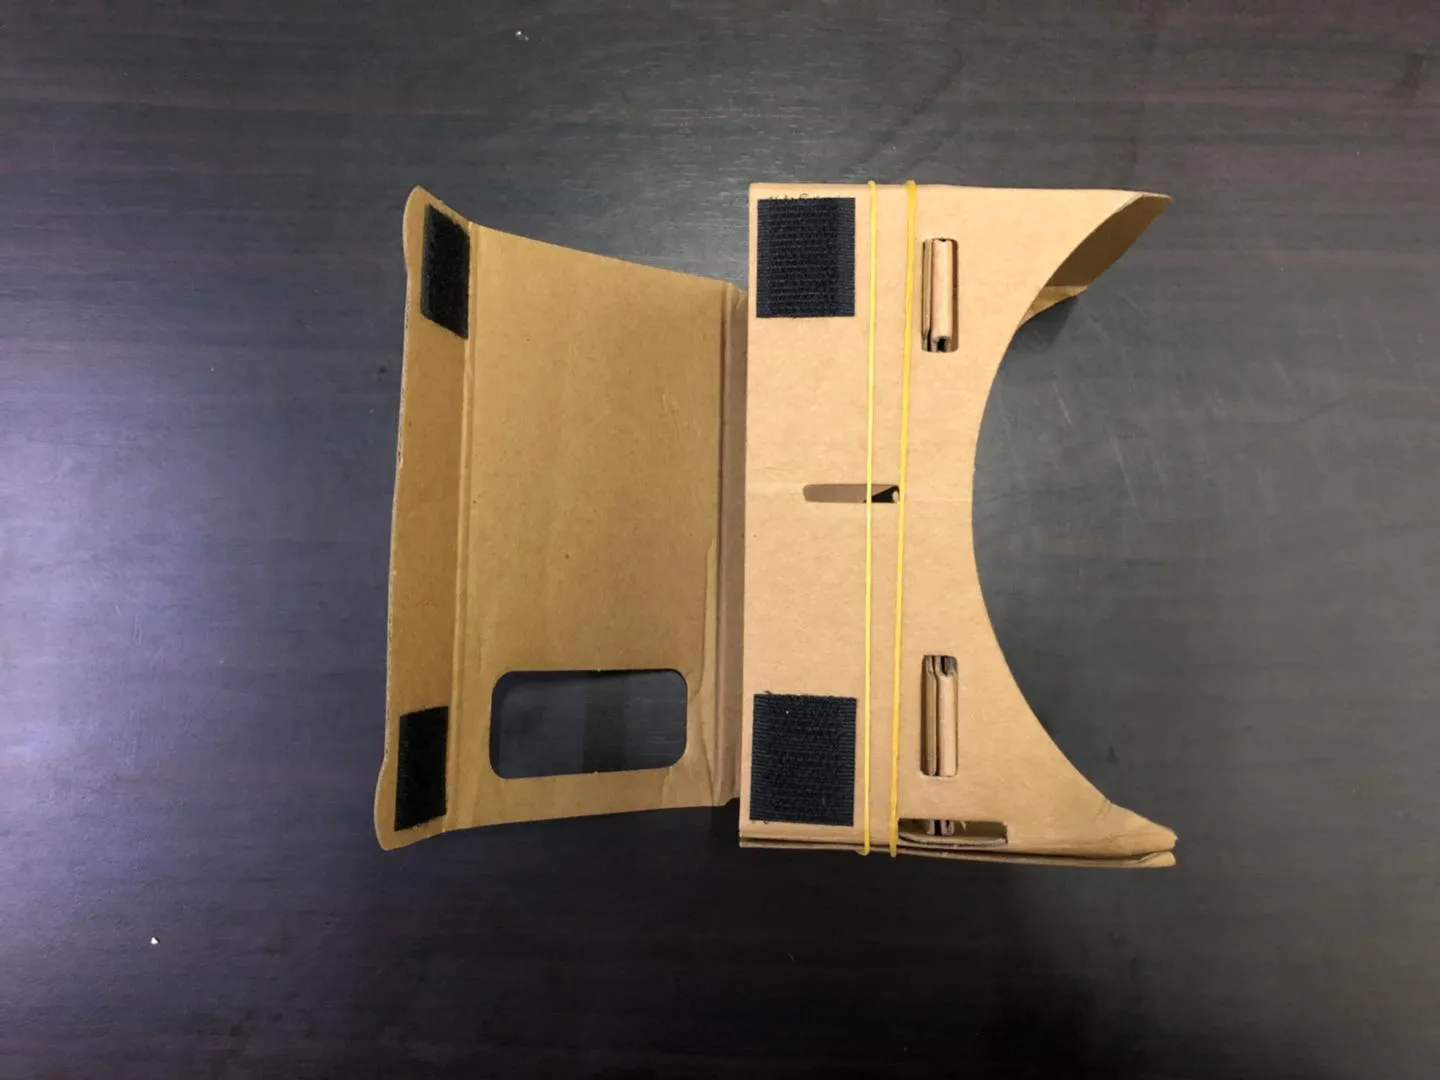 نماذج ثلاثية الأبعاد مجانية ثلاثية الأبعاد نظارات VR DIY Google Cardboard الهاتف المحمول الواقع الافتراضي غير الرسمي من Cardboard VR Toolkit 3D نظارات CCA1785 B-XY